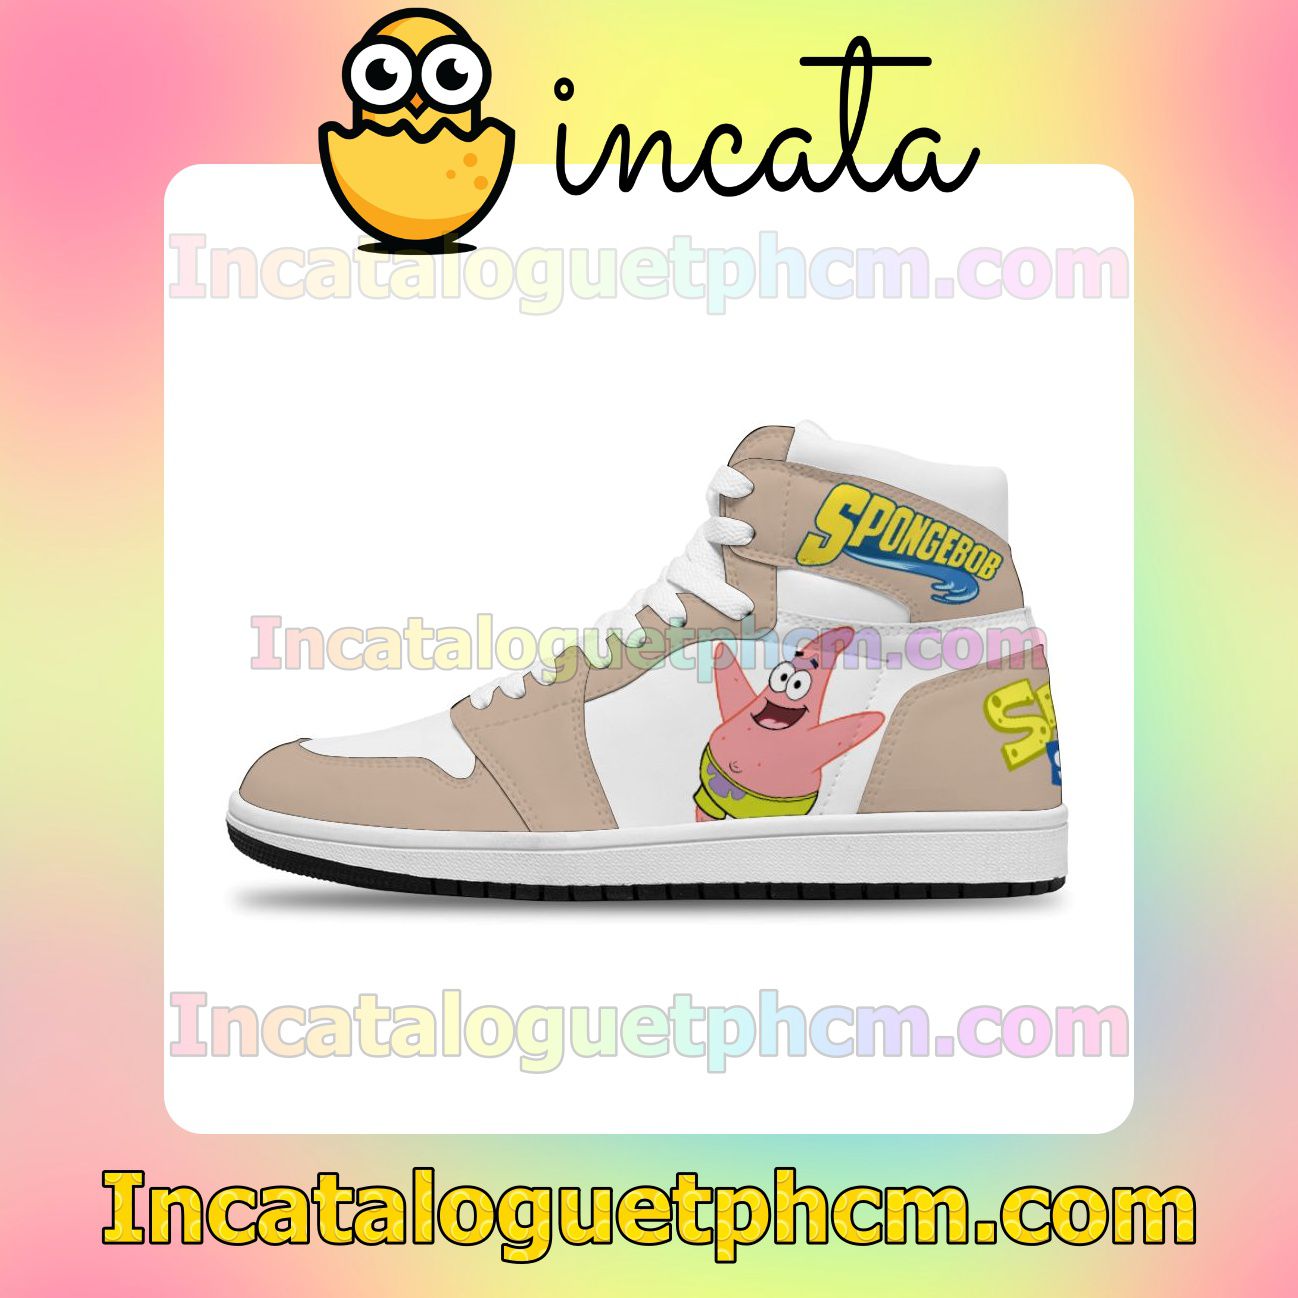 SpongeBob Patrick Star Air Jordan 1 Inspired Shoes